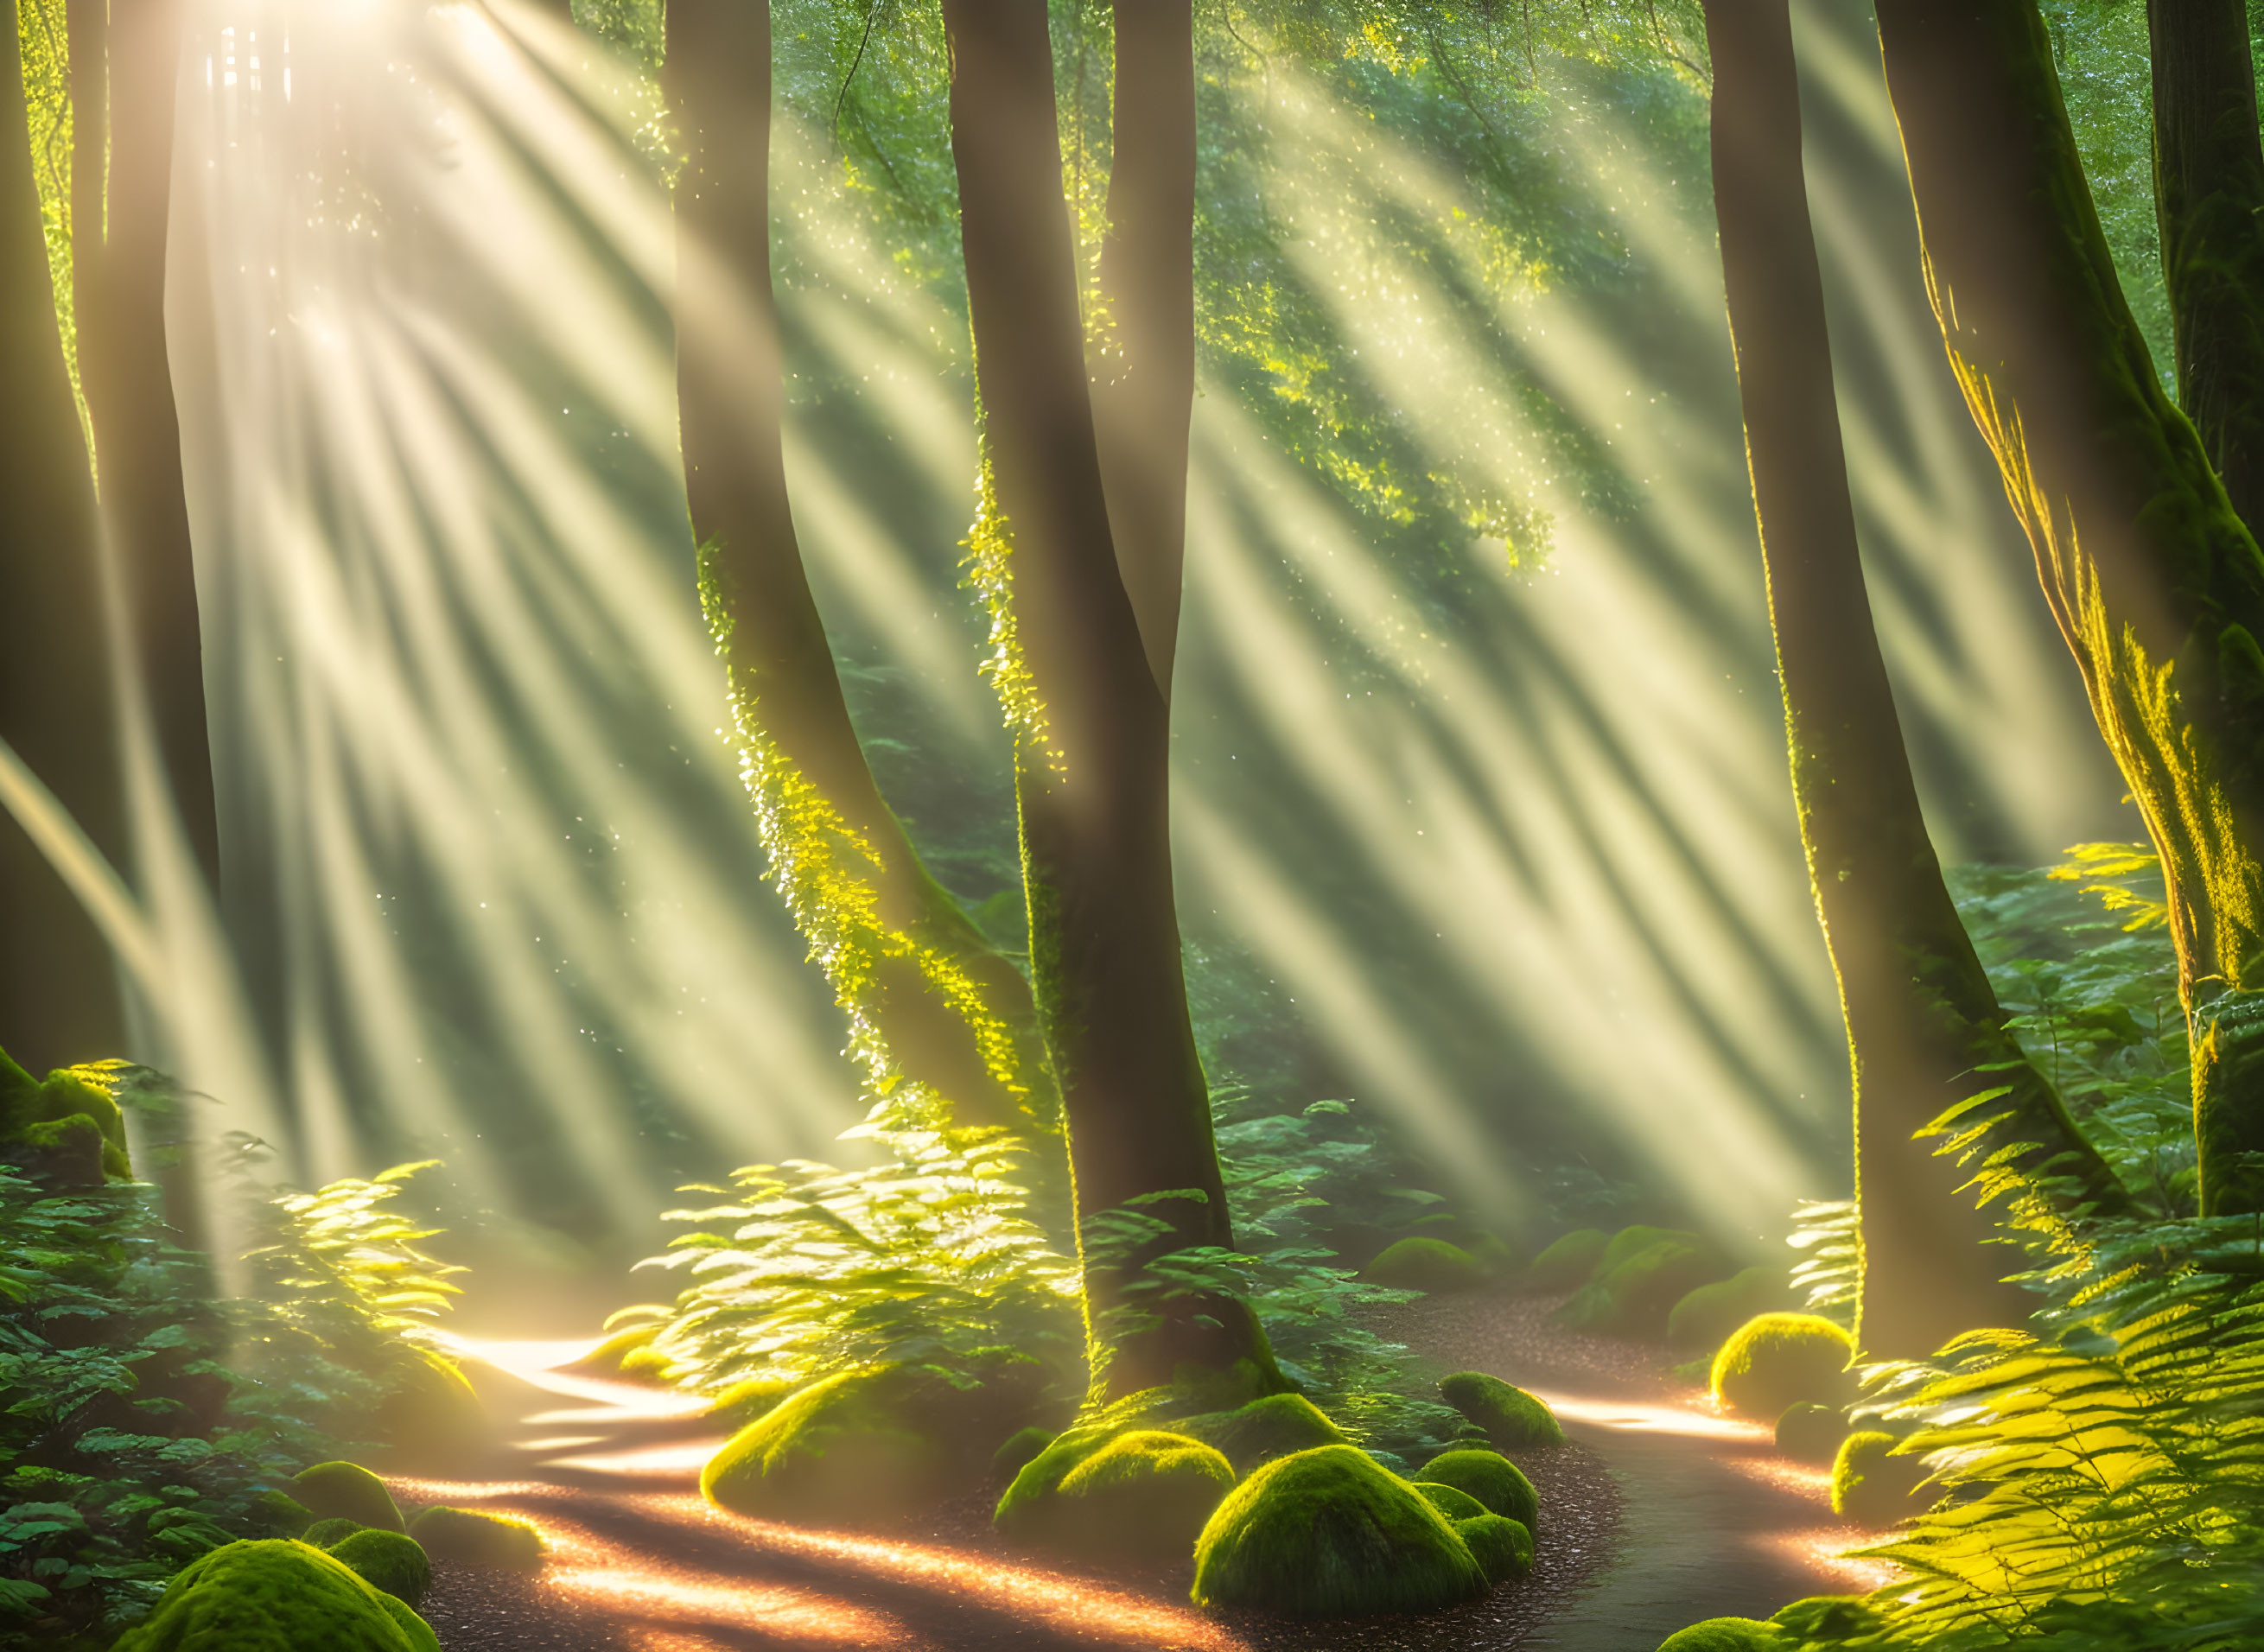 Enchanted Woods: A Sunlit Journey